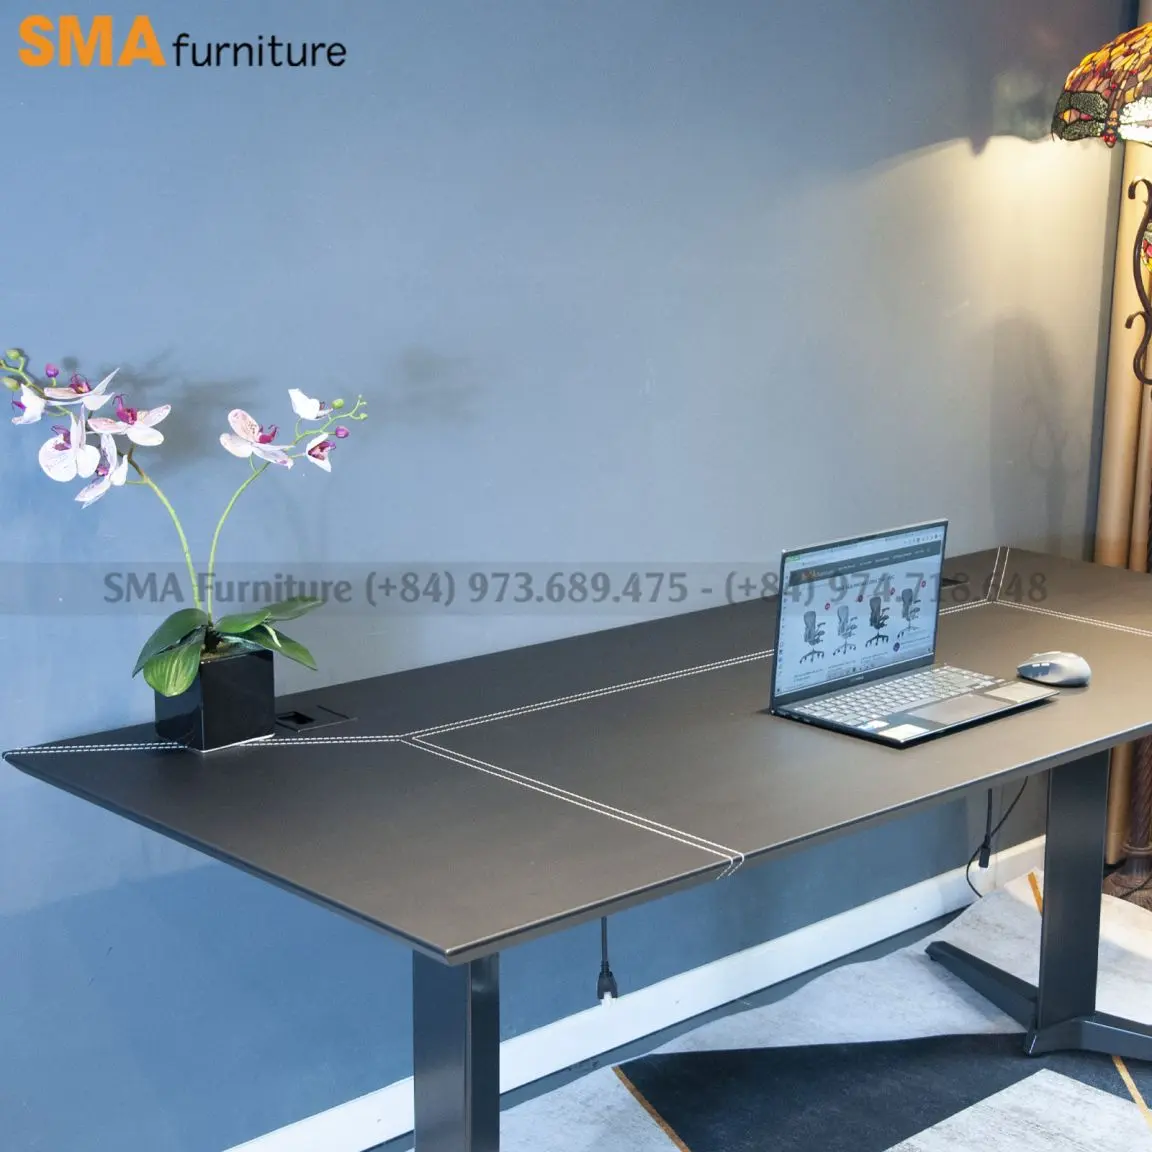 SMA Furniture cung cấp các sản phẩm bàn làm việc cá nhân chính hãng